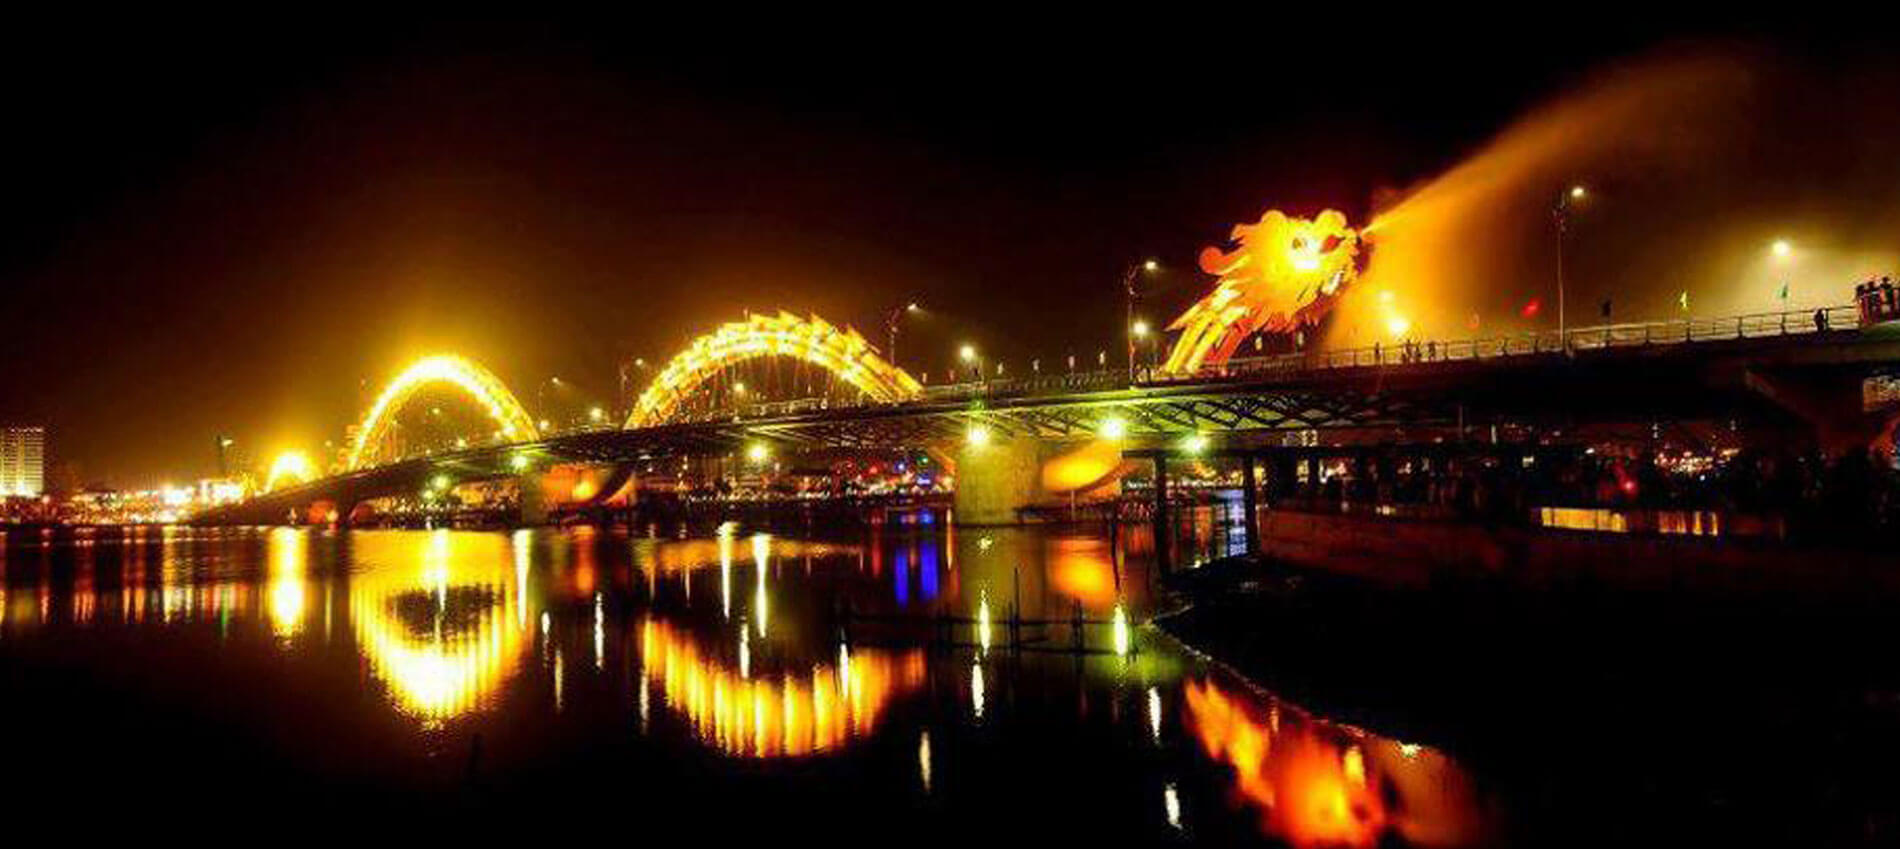 Cầu Hàm Rồng có khả năng phun nước và lửa về đêm ở Đà Nẵng